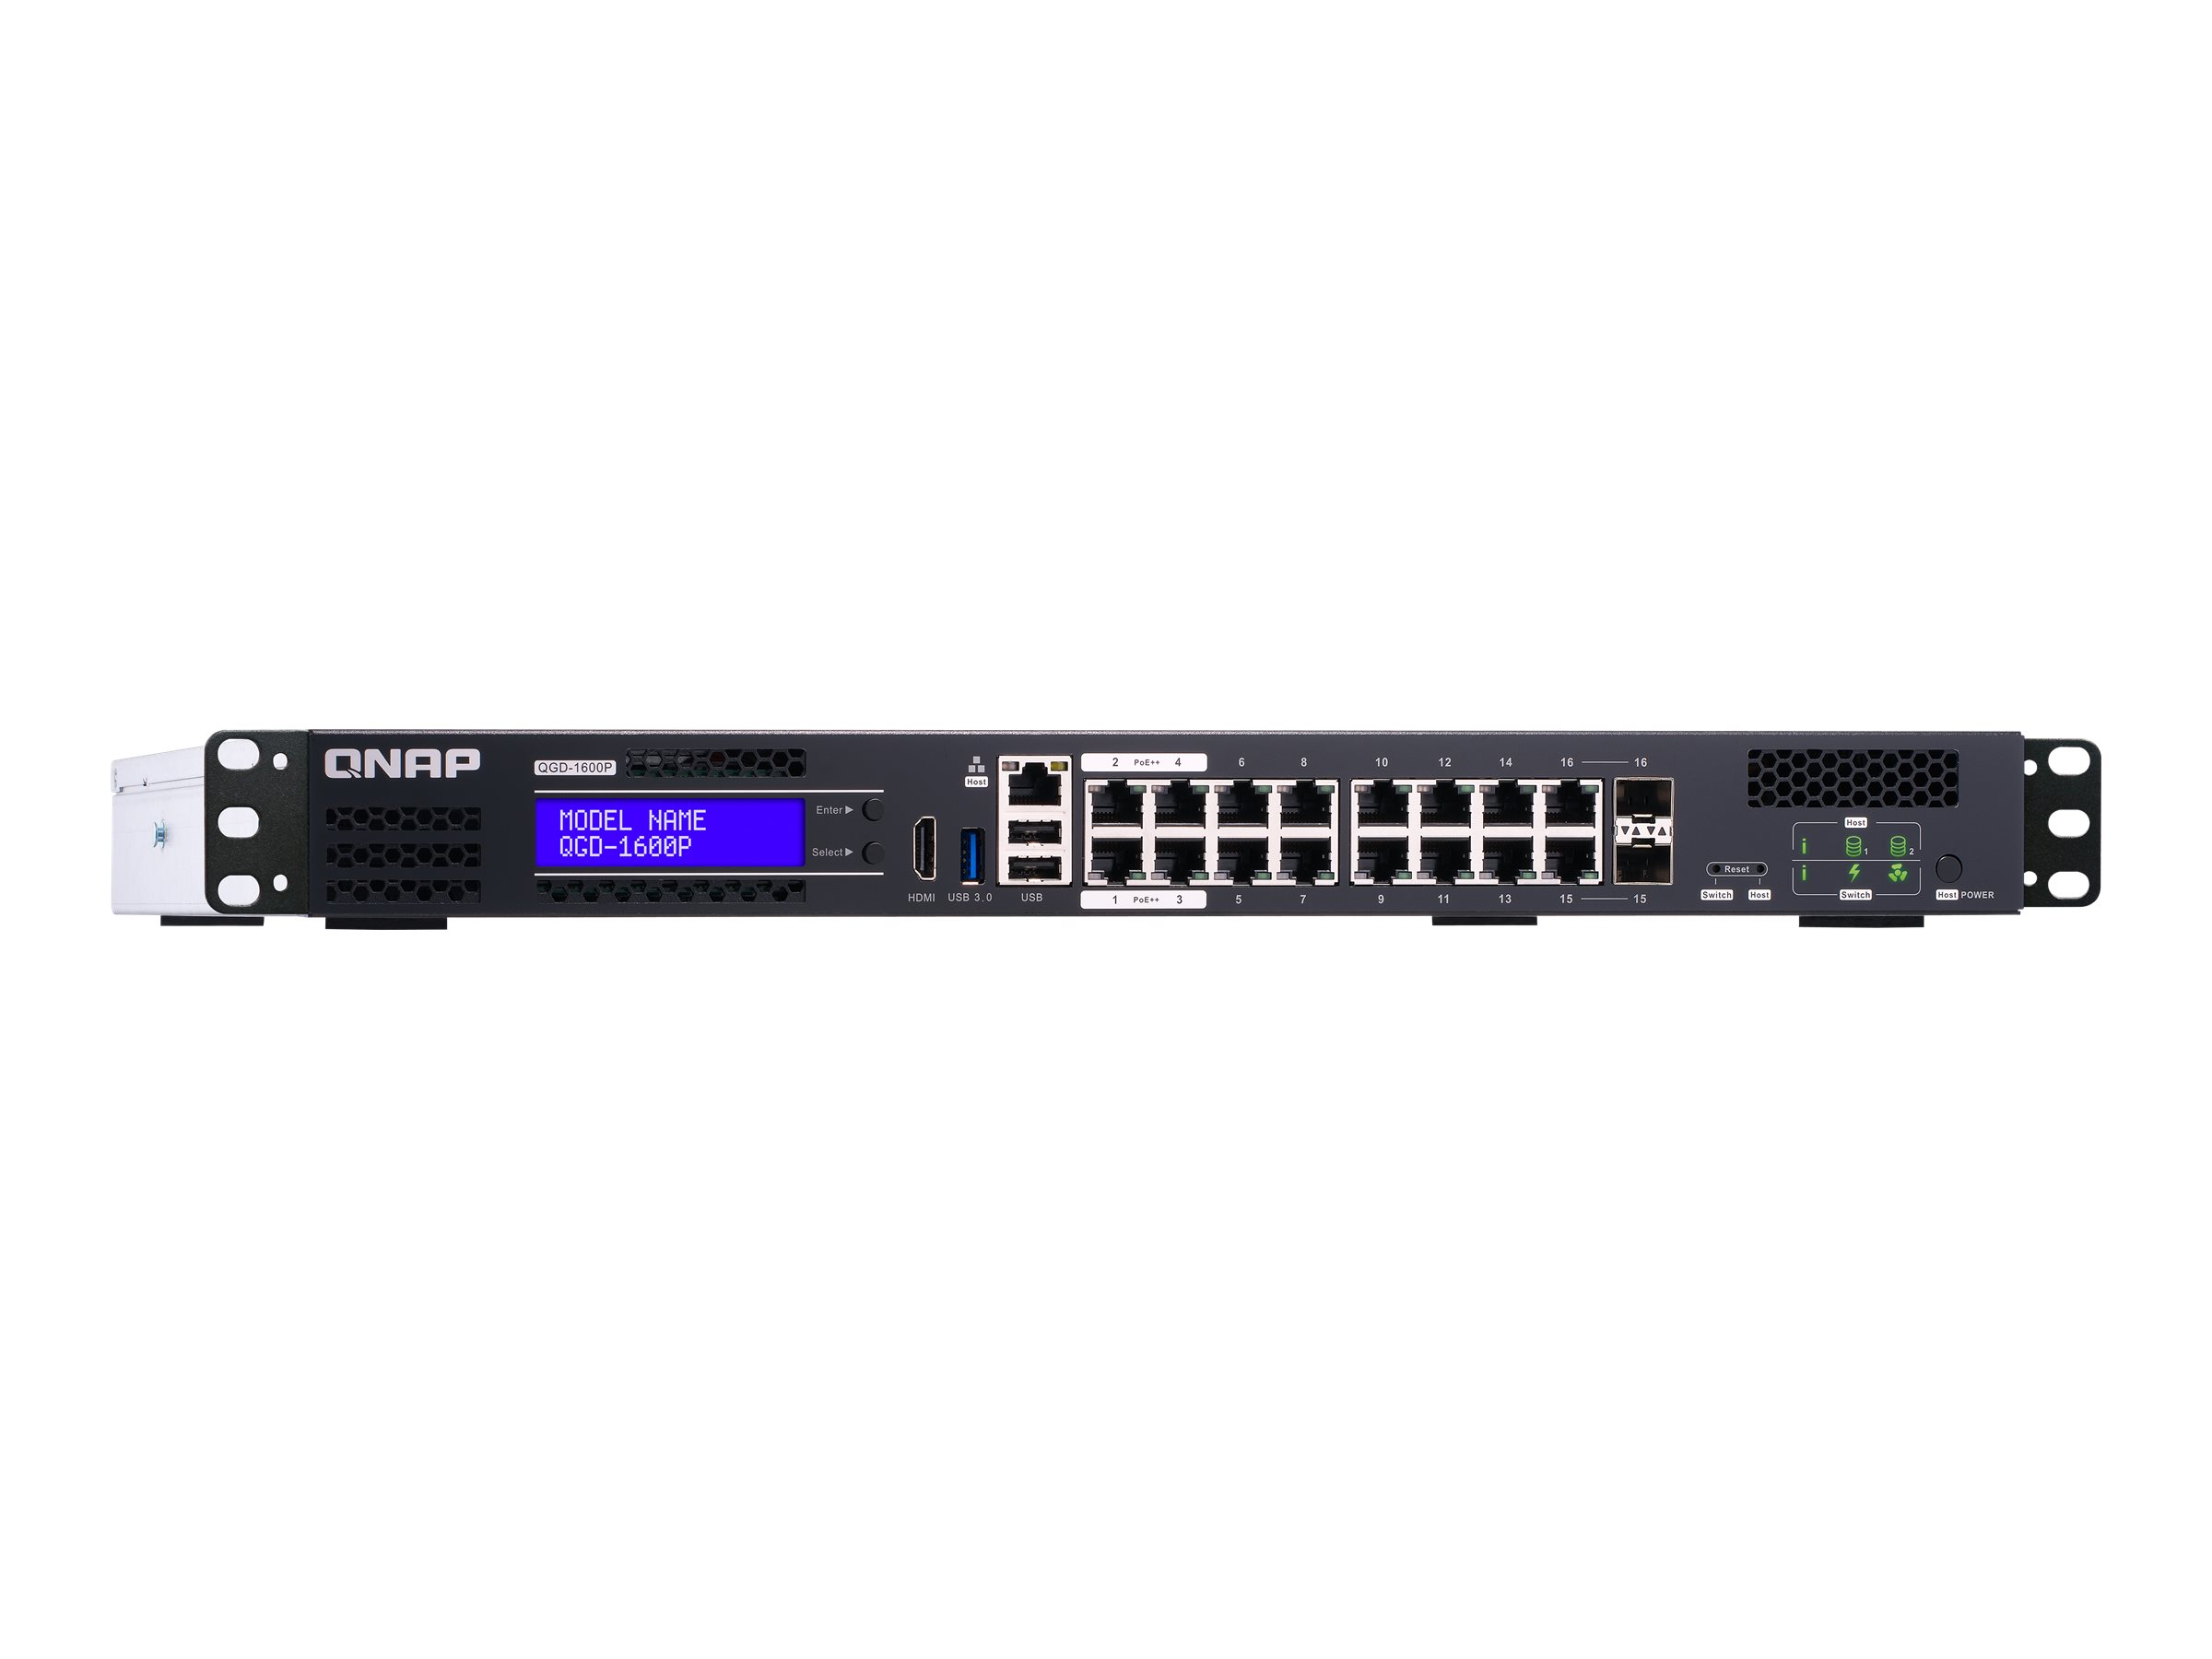 QNAP QGD-1600P - Switch - Smart - 4 x 10/100/1000 (PoE++)